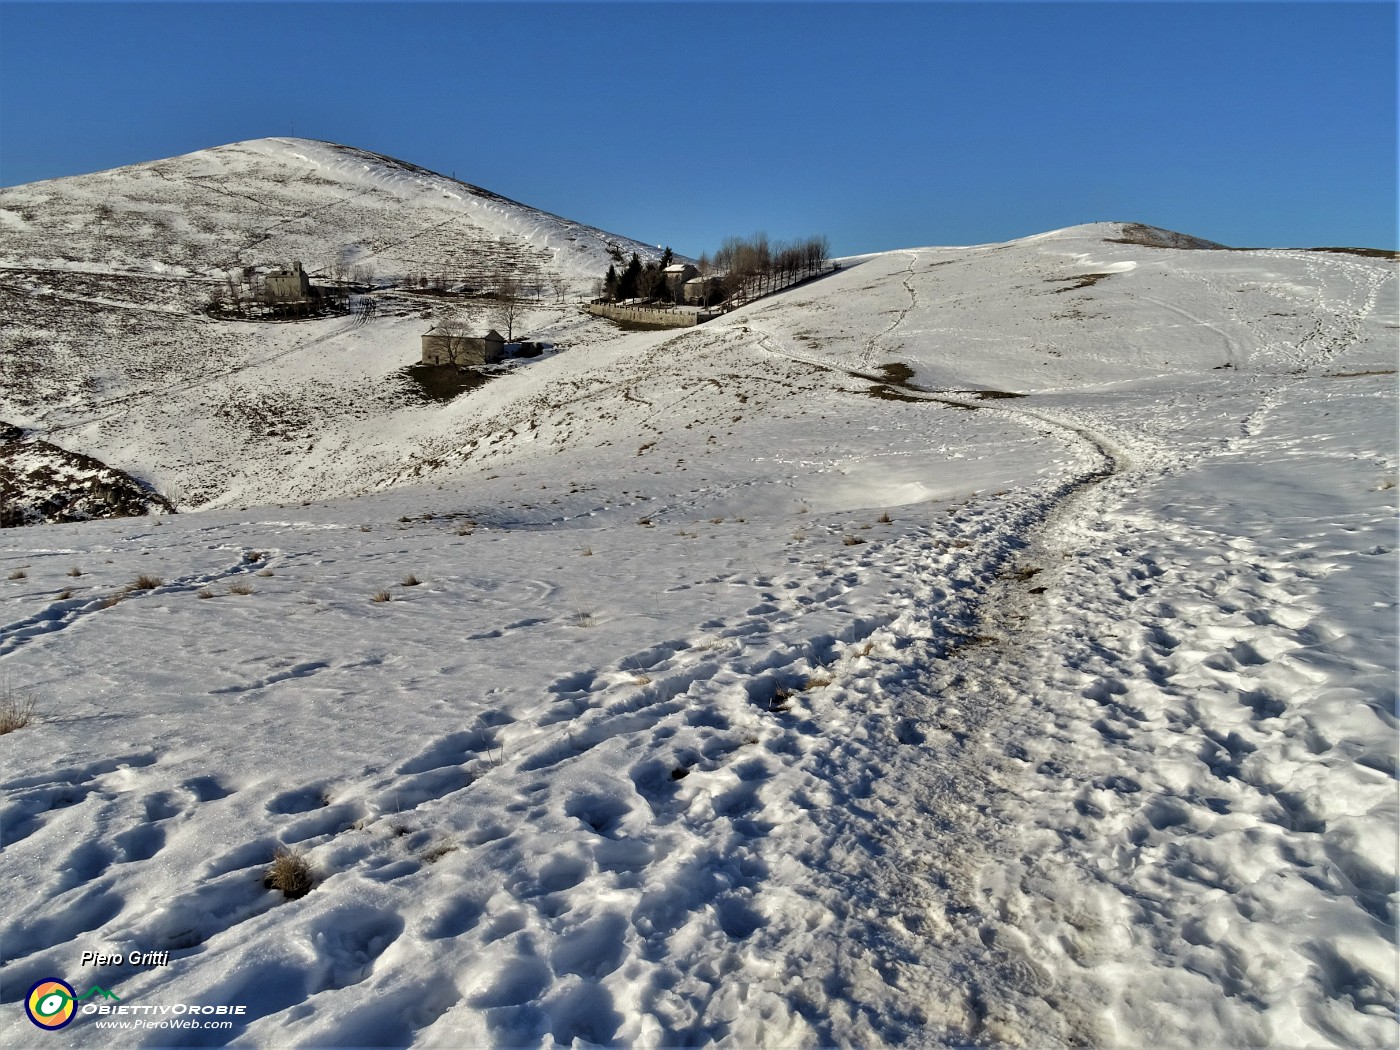 30 Sulle nevi del Linzone in fase di scioglimento.JPG